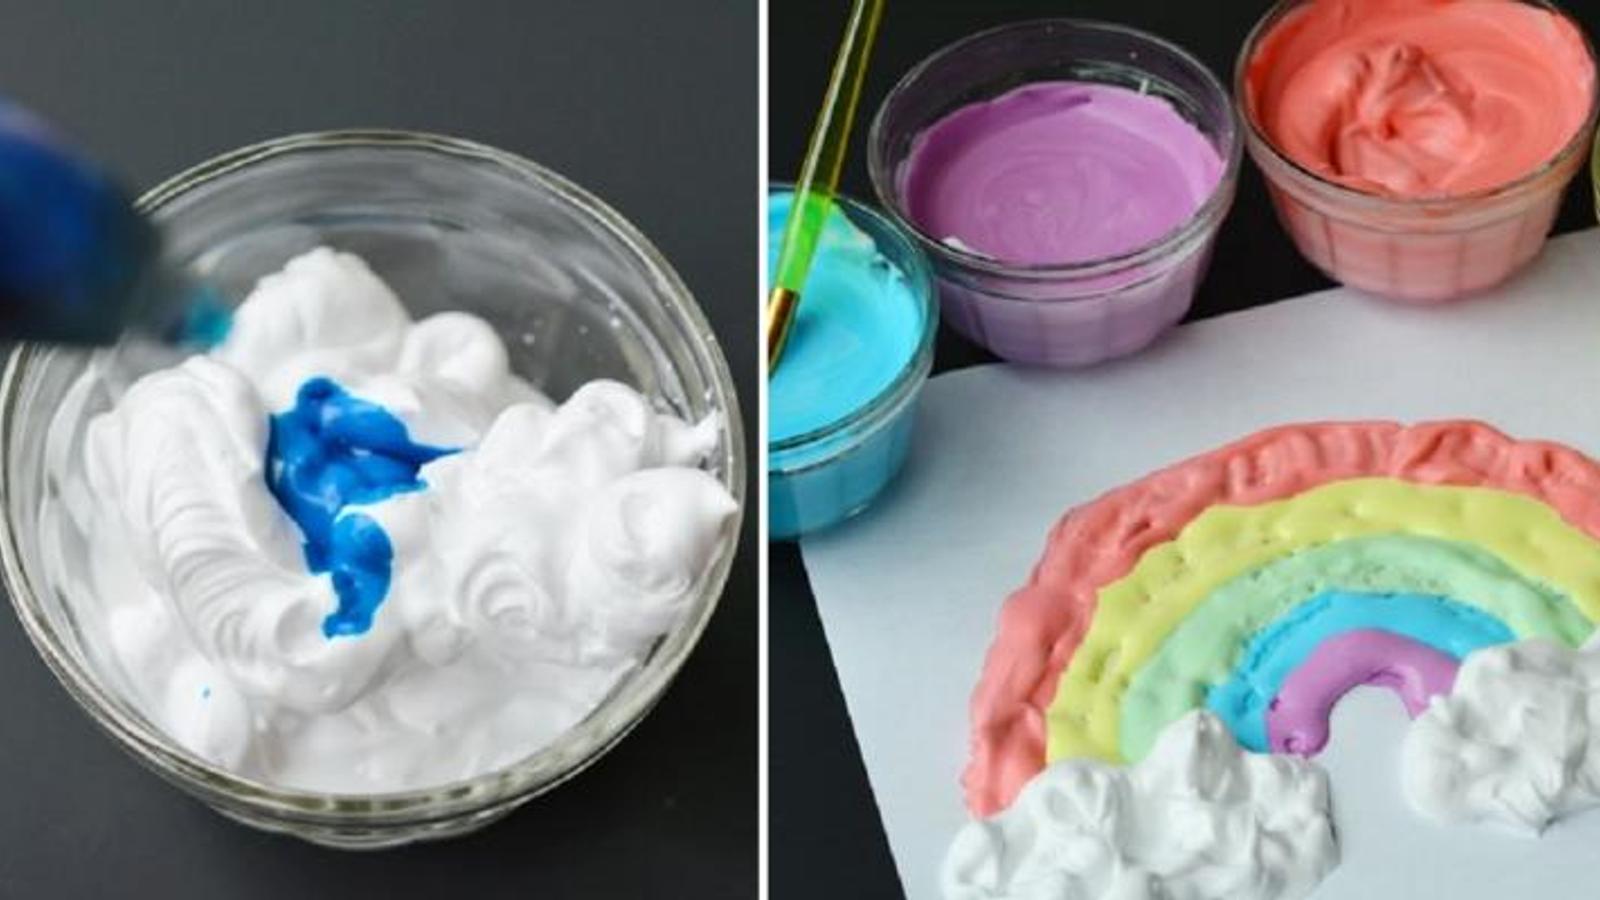 Peinture 3D! Une recette + 15 idées de peinture à faire avec les enfants! 